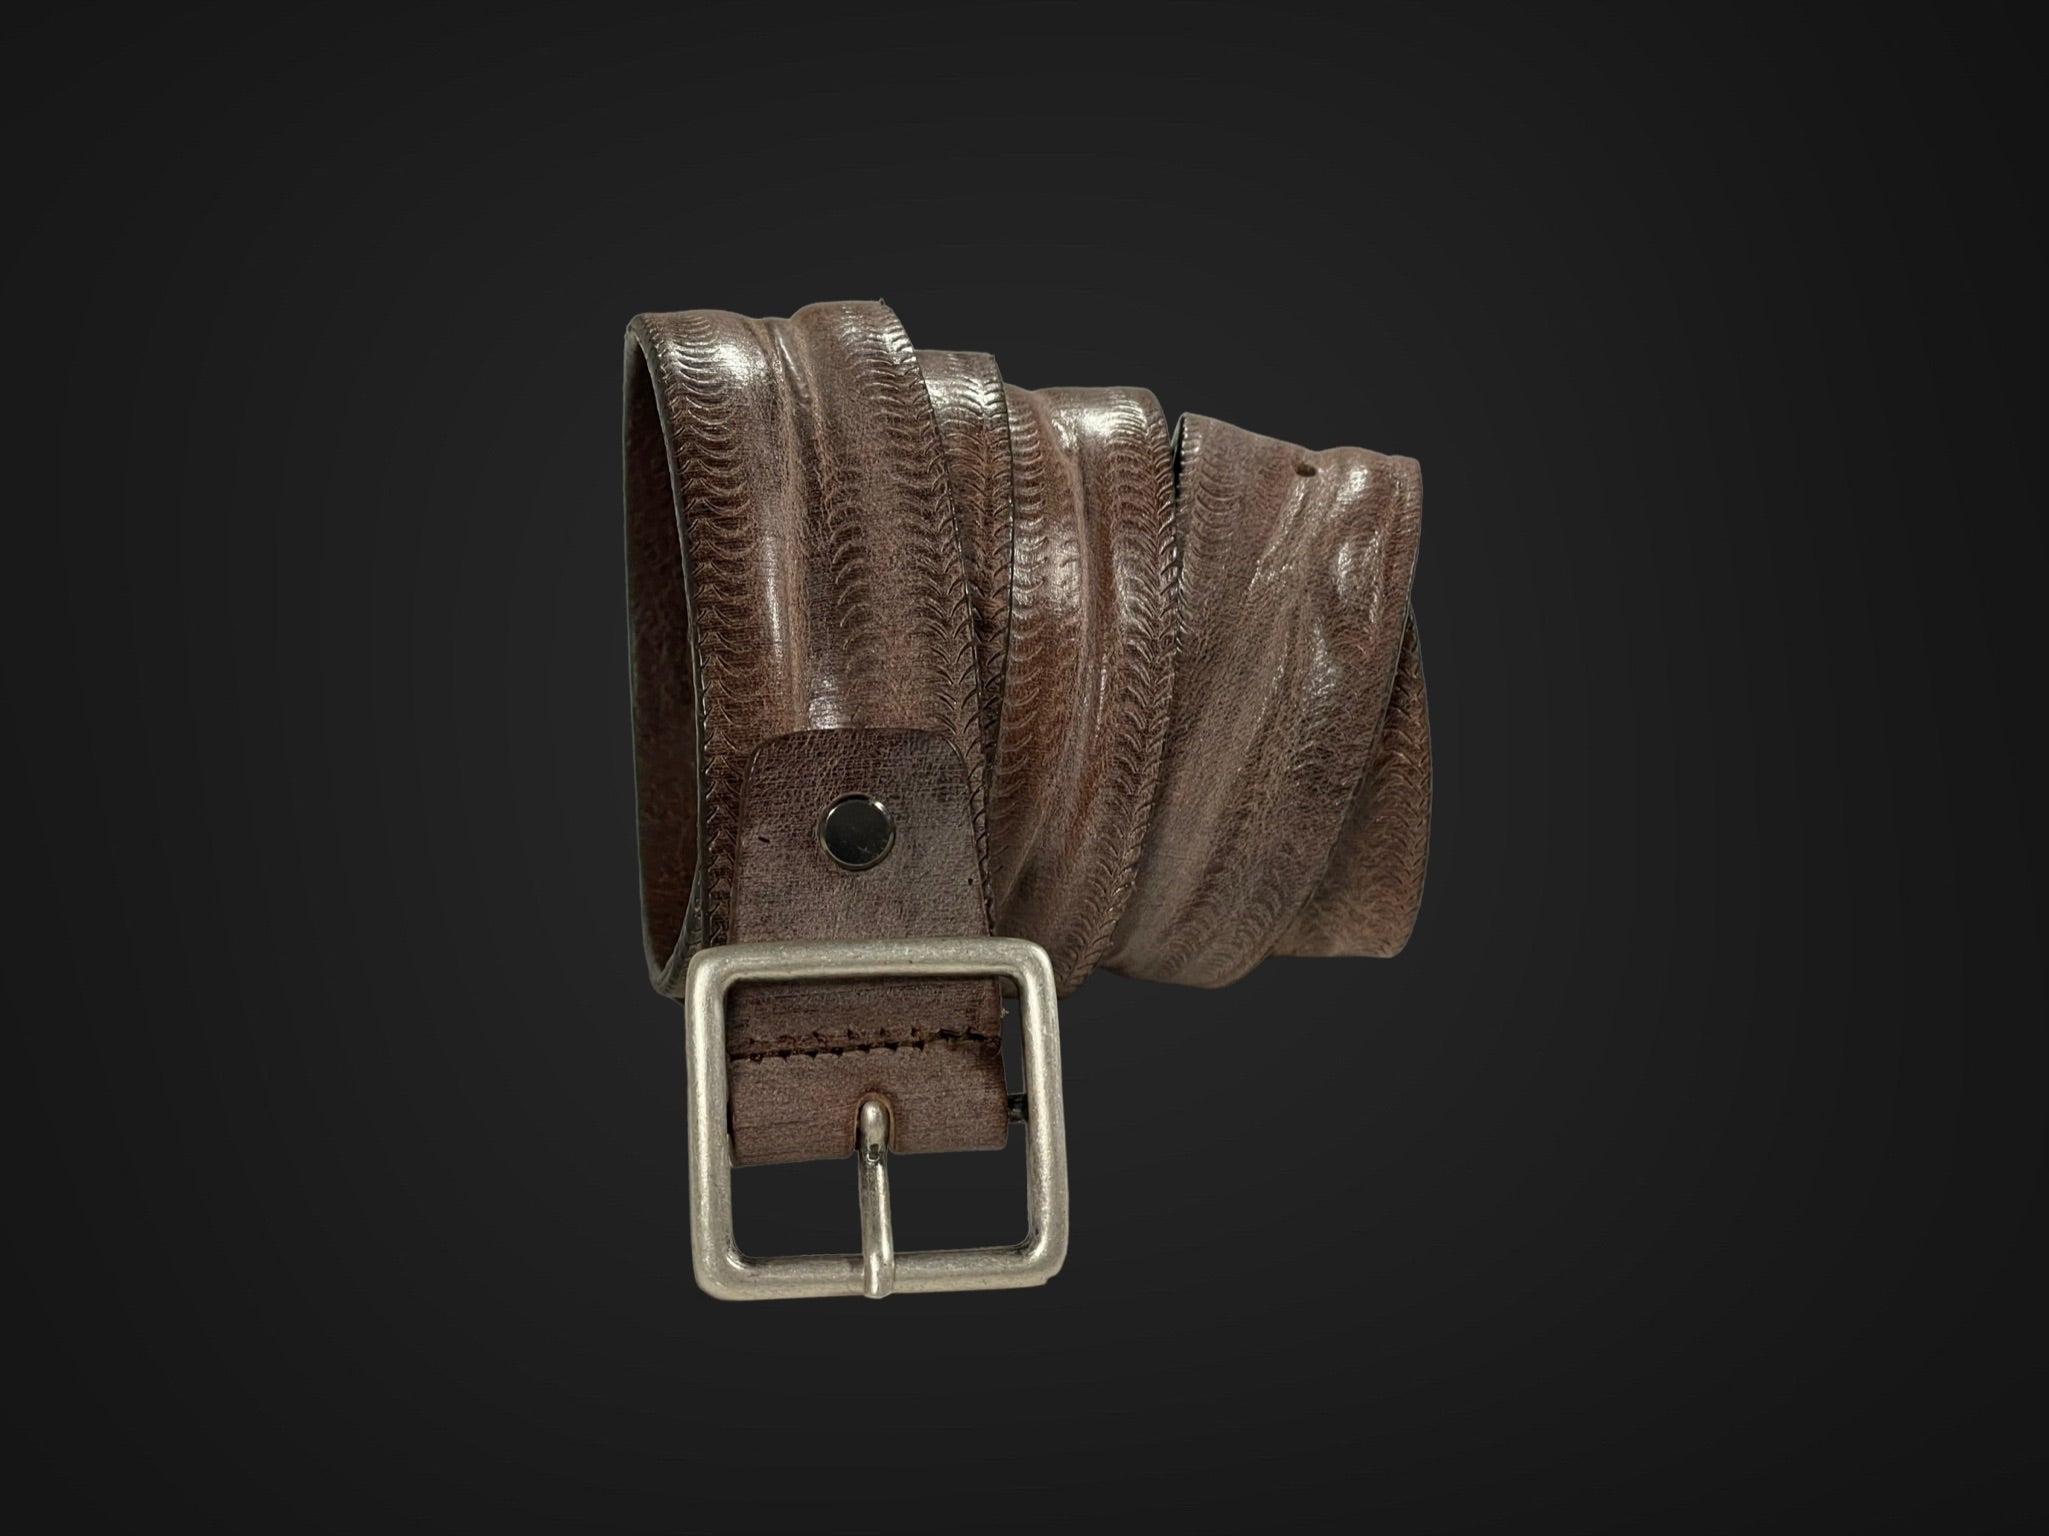 Cintura 035mm lavata e stropicciata con procedimento di ceratura e stampo a graffi